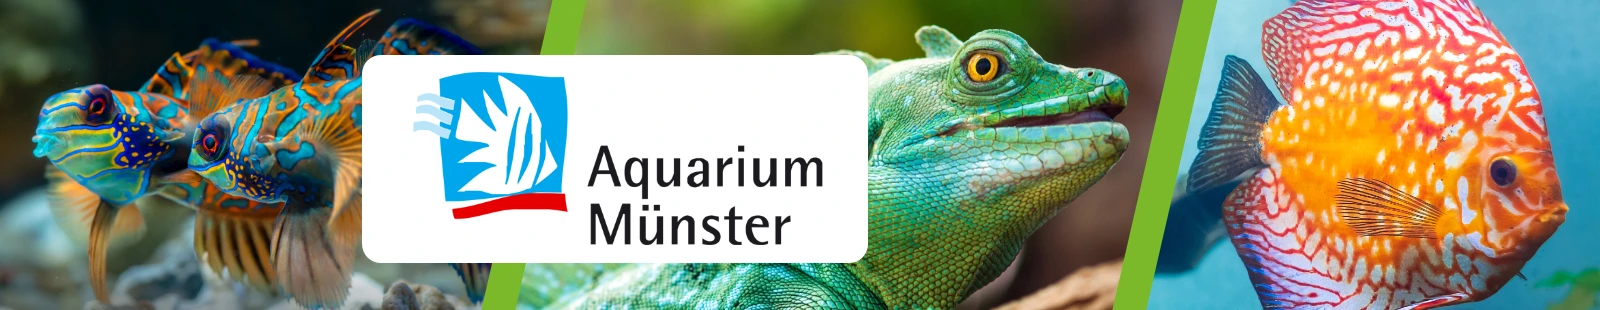 AquariumMnster_Banner.webp